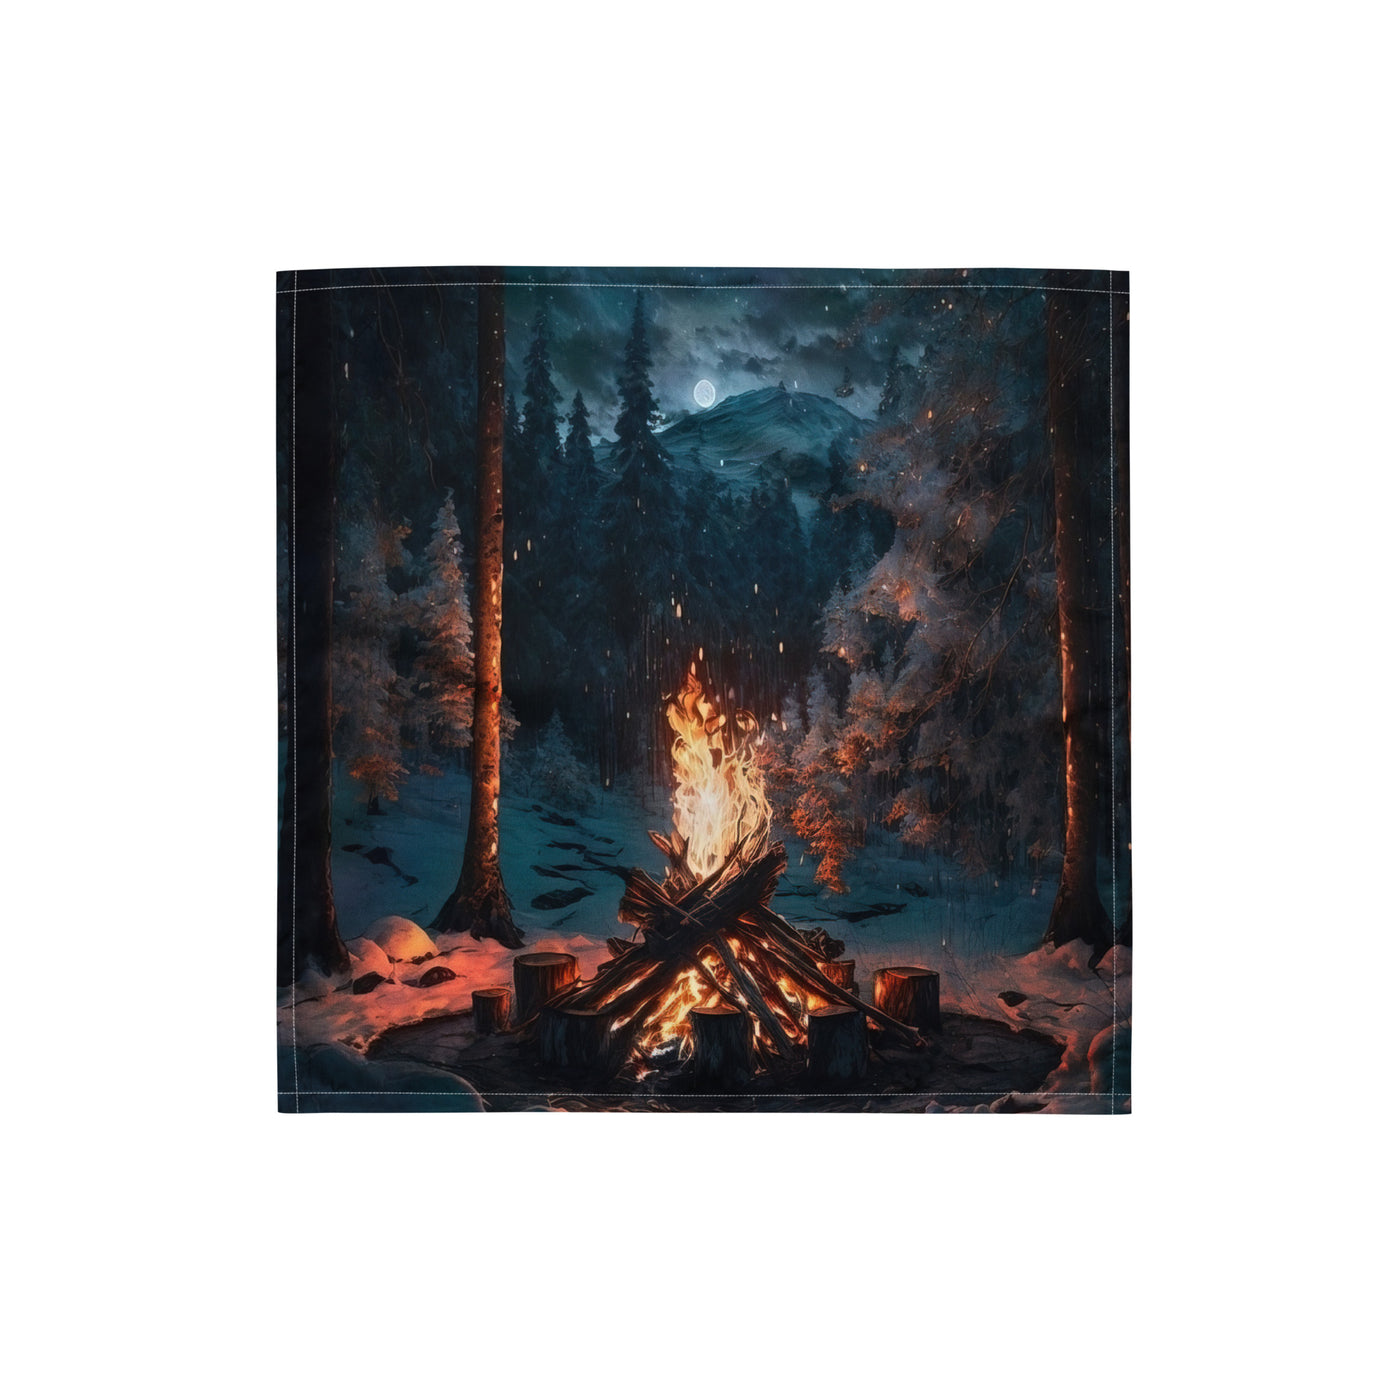 Lagerfeuer beim Camping - Wald mit Schneebedeckten Bäumen - Malerei - Bandana (All-Over Print) camping xxx S